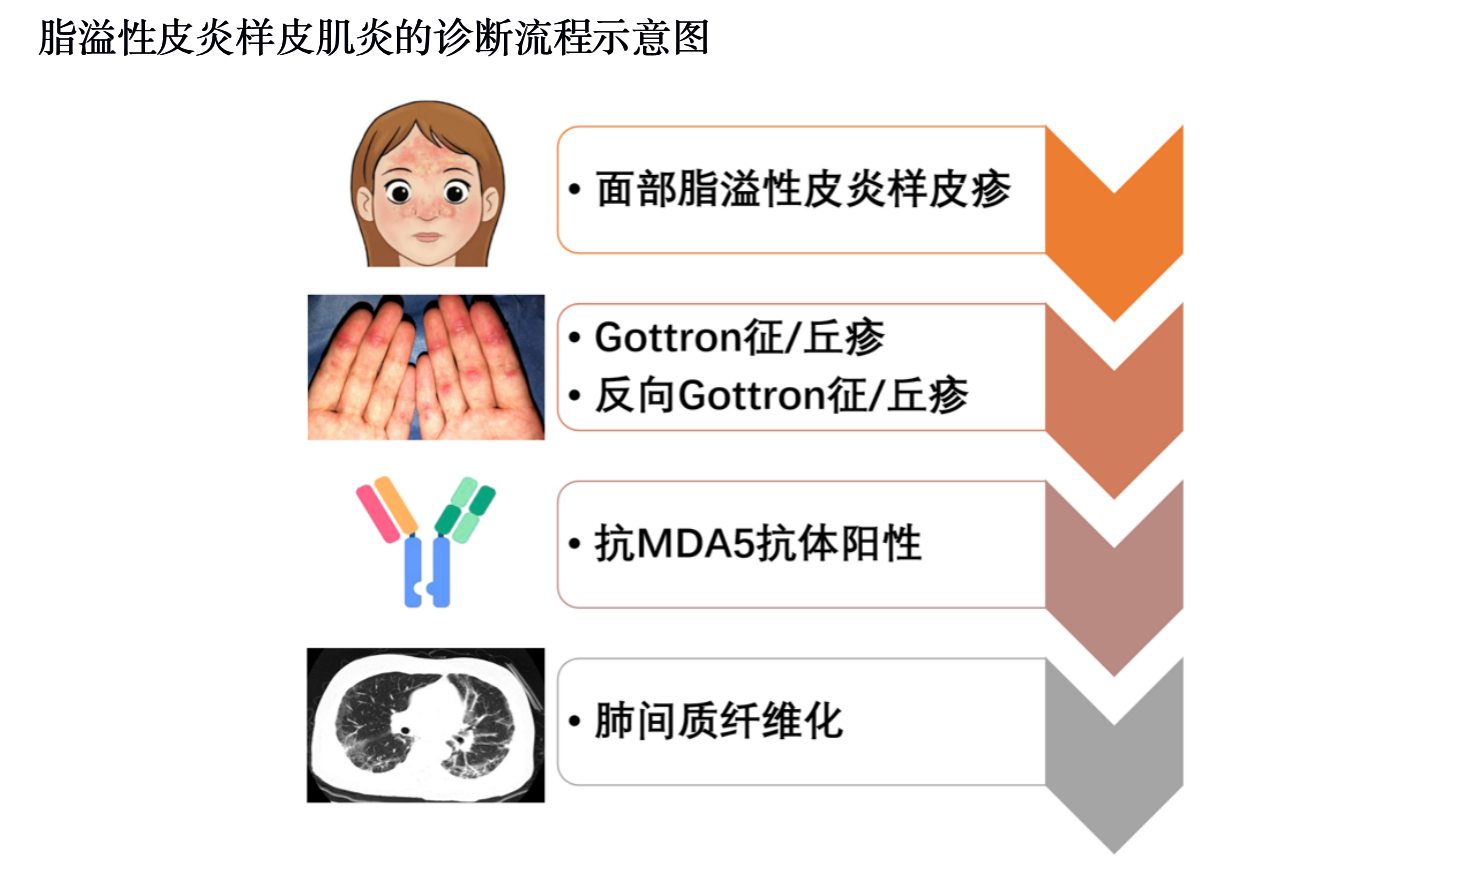 上海专家发现特殊类型皮肌炎——脂溢性皮炎样皮肌炎